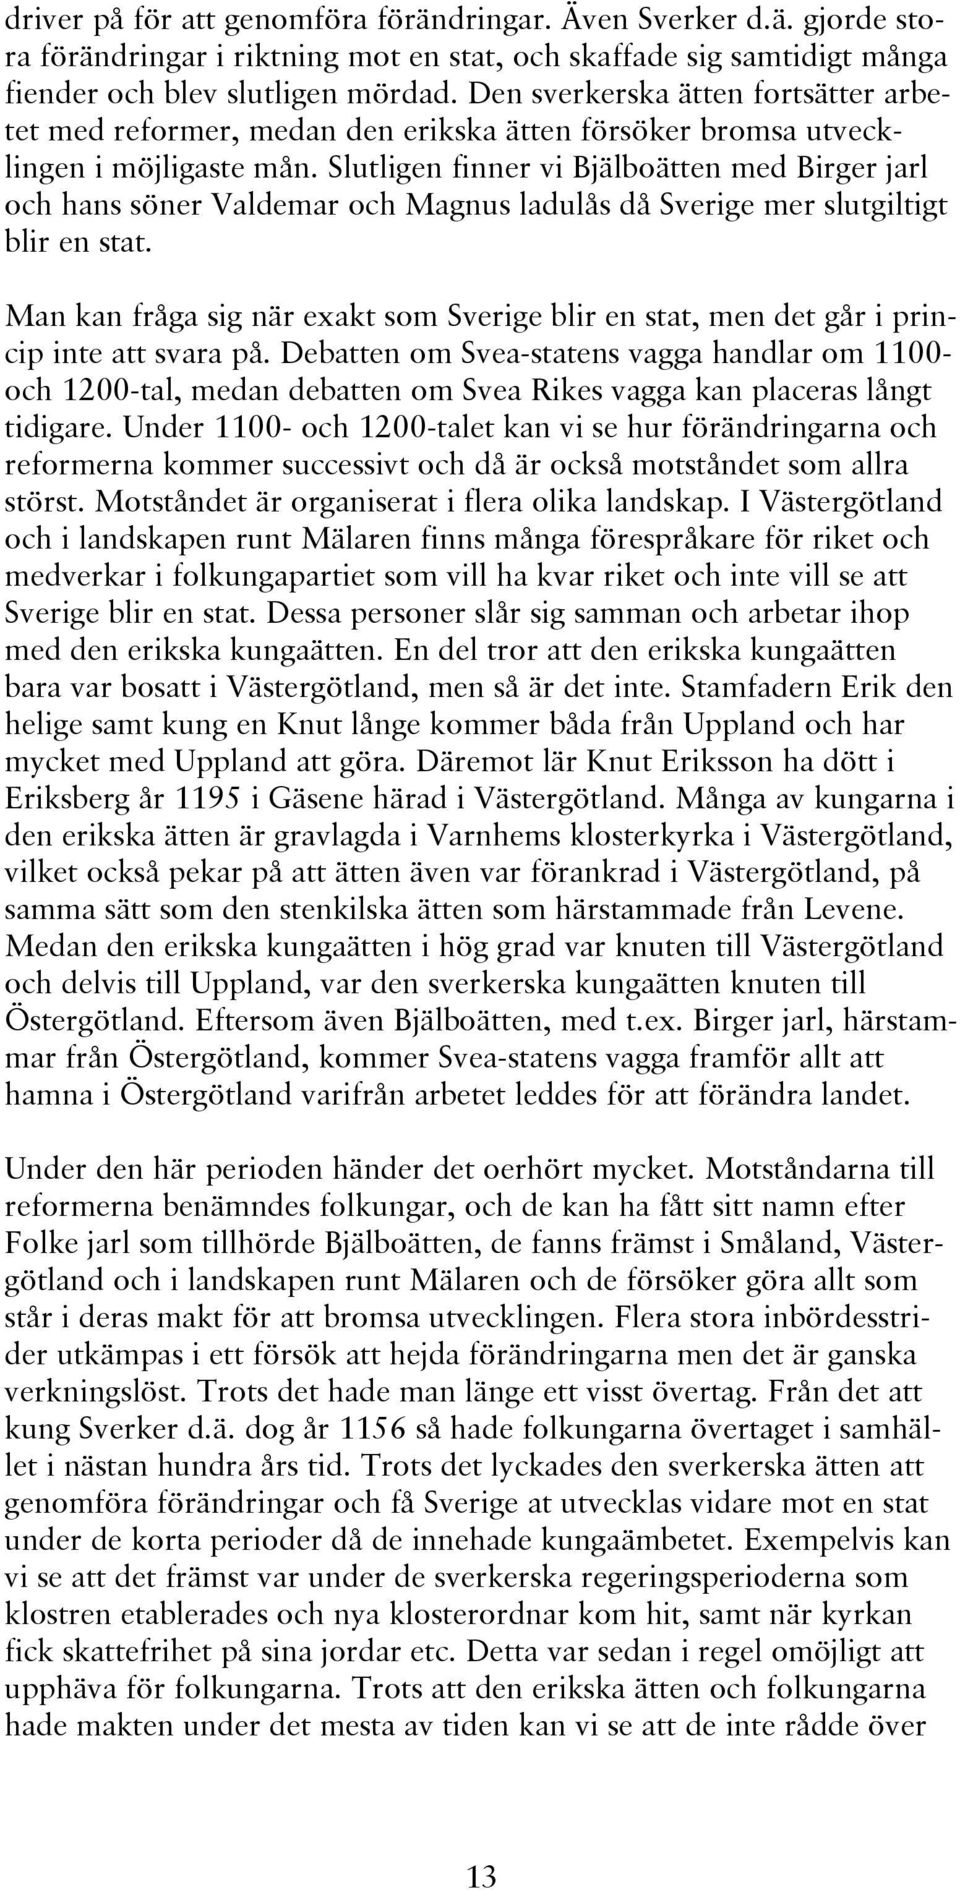 Slutligen finner vi Bjälboätten med Birger jarl och hans söner Valdemar och Magnus ladulås då Sverige mer slutgiltigt blir en stat.